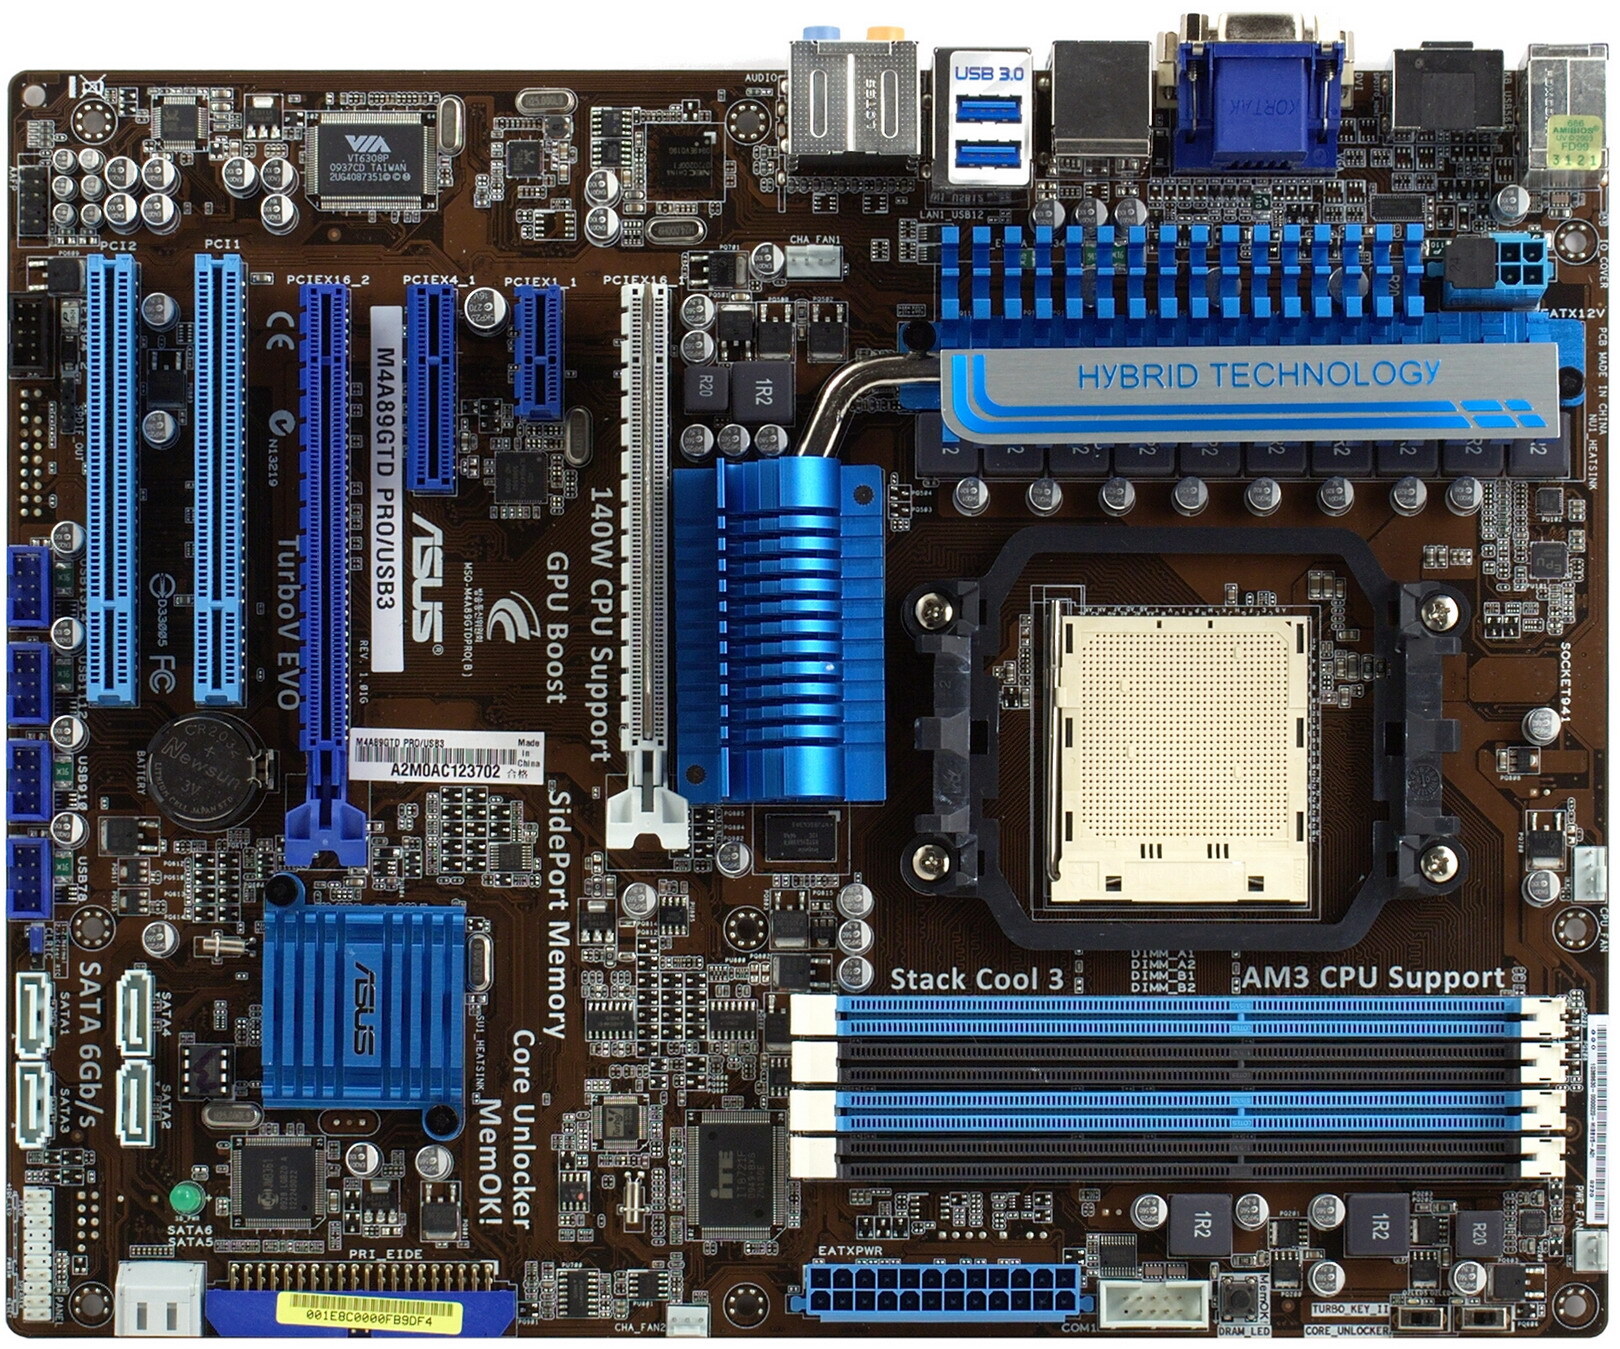 Bo mạch chủ (Mainboard) Asus M4A89GTD PRO/USB3 - Socket AM3, AMD 890GX/SB850, 4 x DIMM, Max 16GB, DDR3